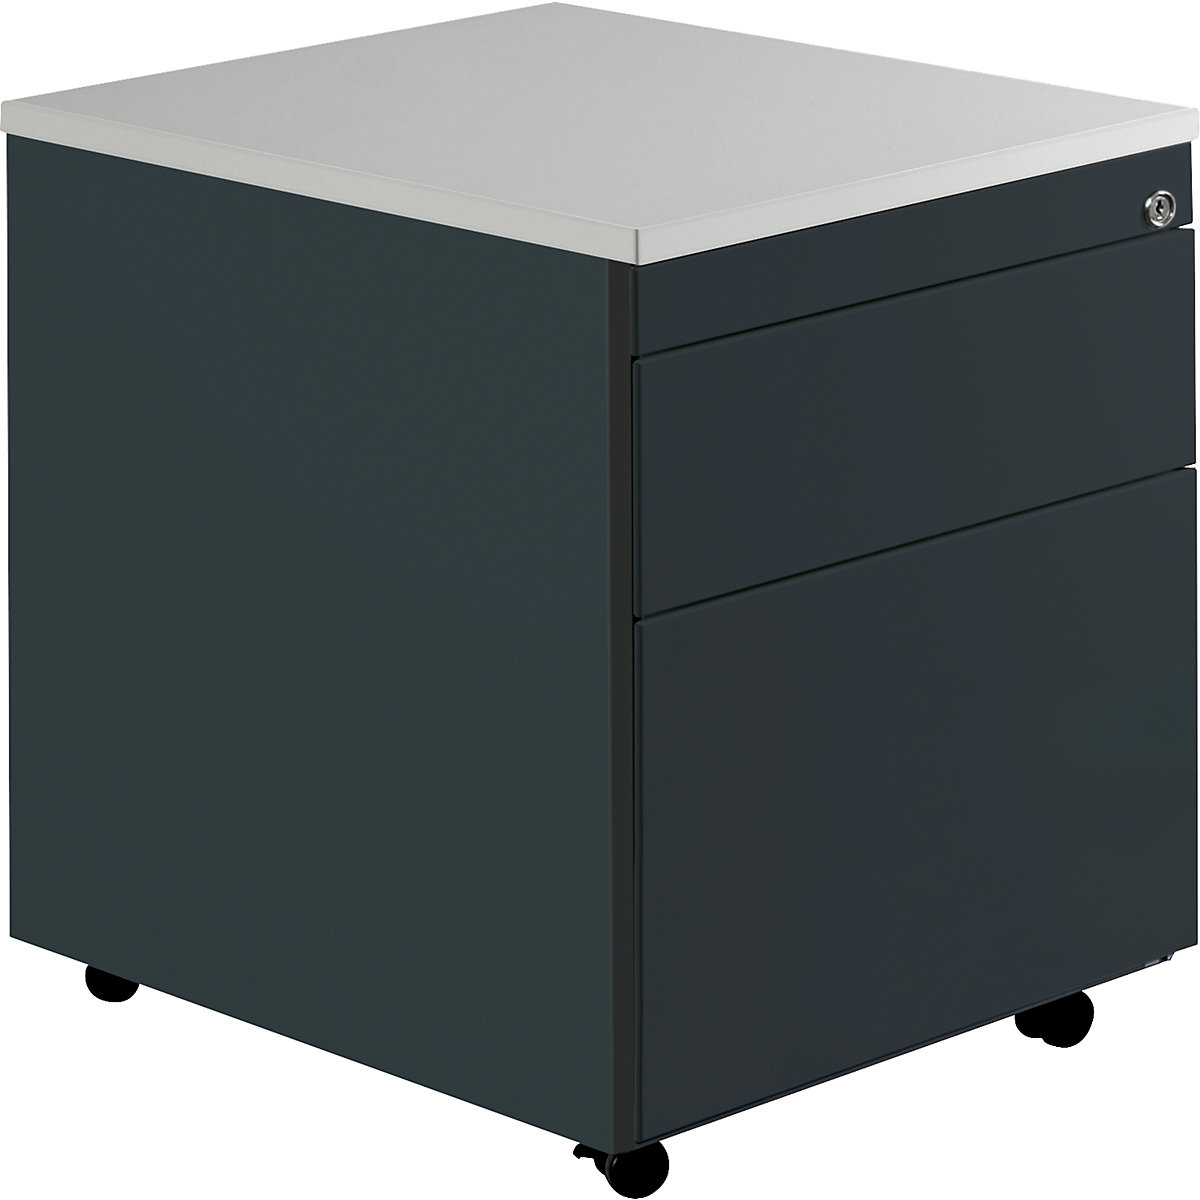 Zásuvkový kontajner s kolieskami – mauser, v x š 579 x 600 mm, 1 zásuvka na materiál, 1 závesná registratúra, antracitová / antracitová / svetlošedá-7